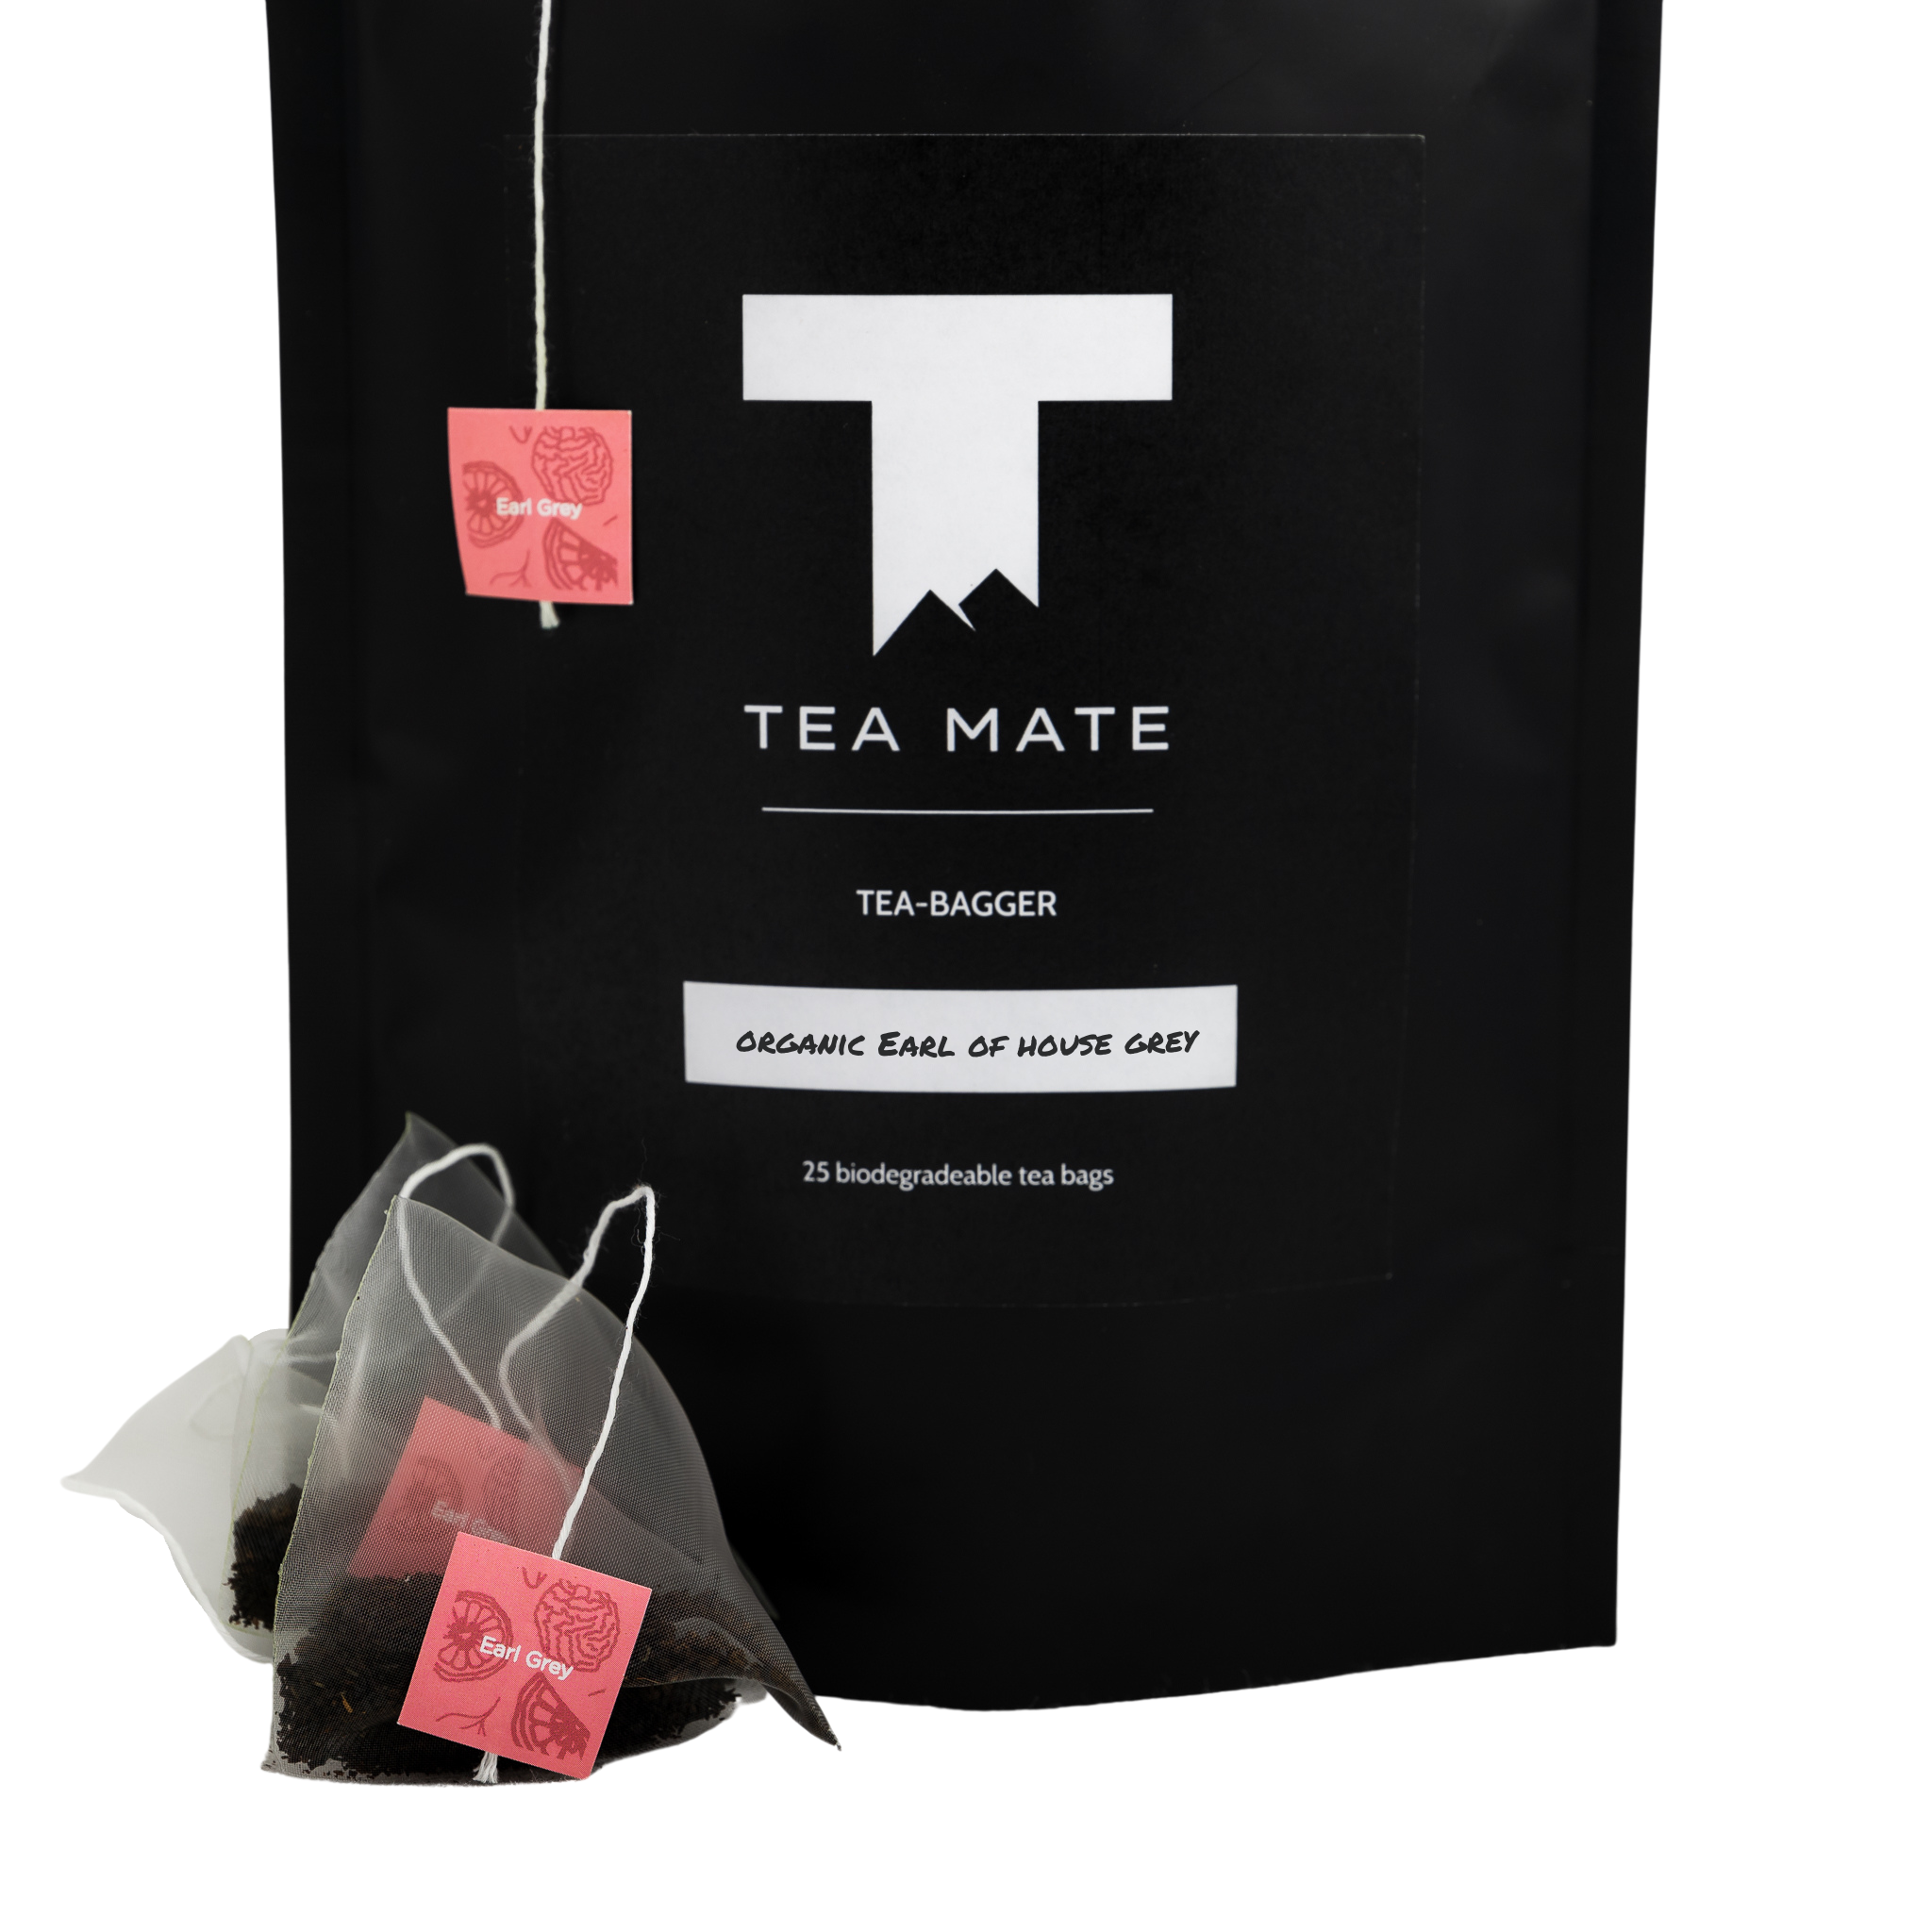 Close Up Australian Tea Packaging Of TEA MATE Organic Earl Of House Grey Earl Grey Tea In Premium Biodegradable Tea Bags